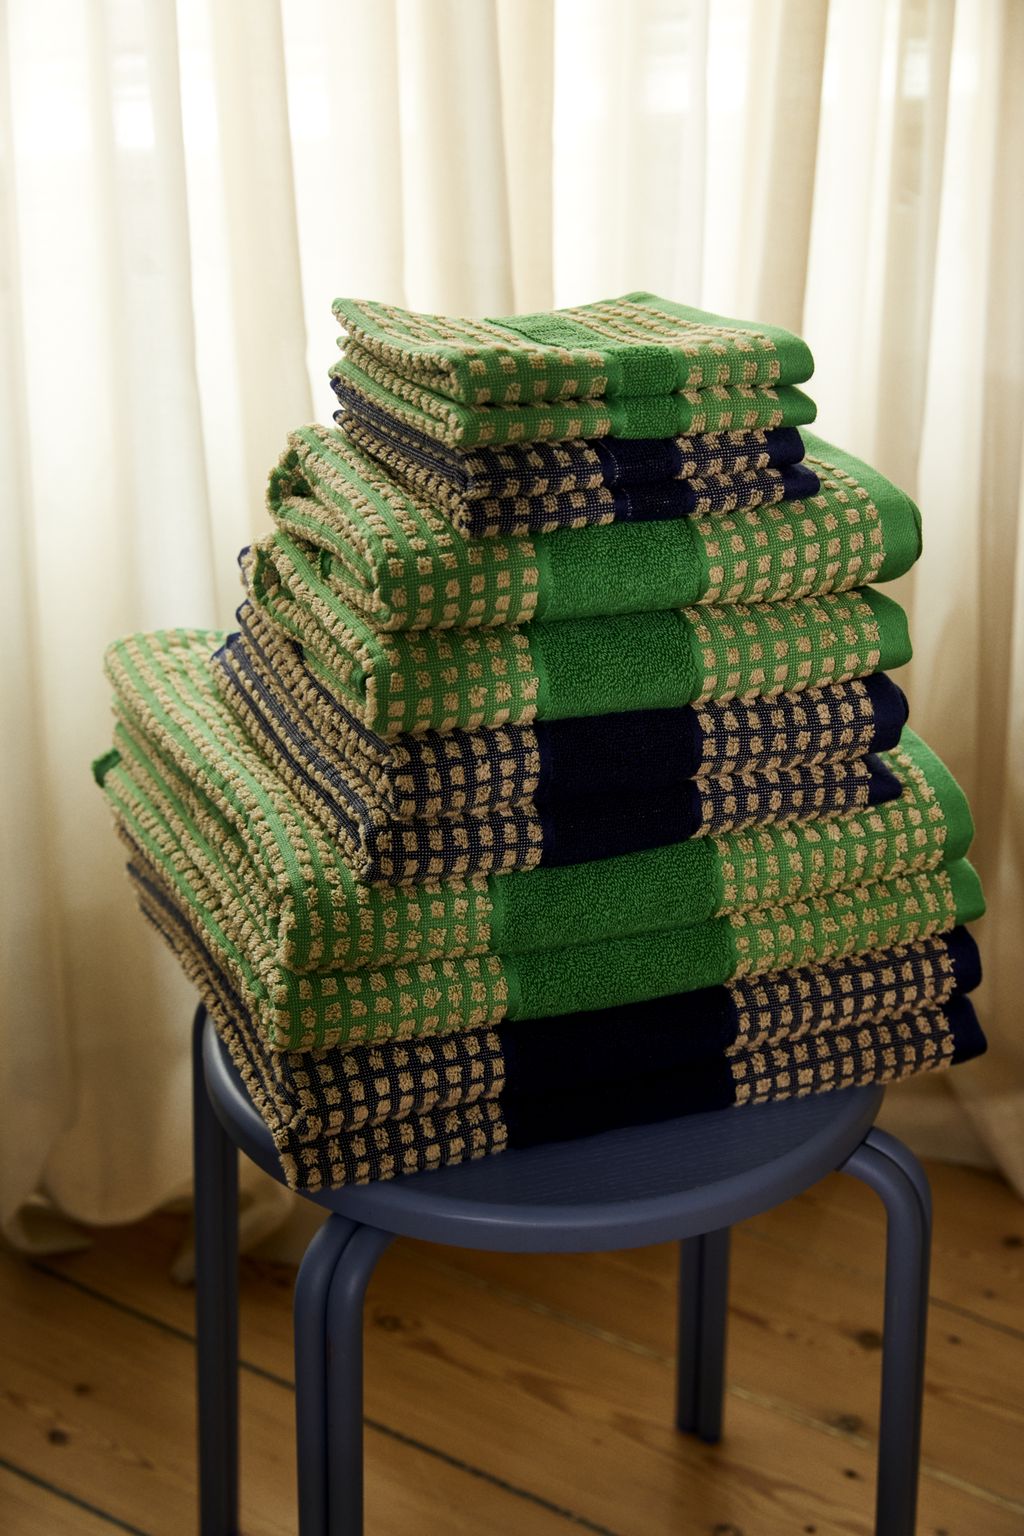 Juna检查毛巾50 x100厘米，绿色/米色